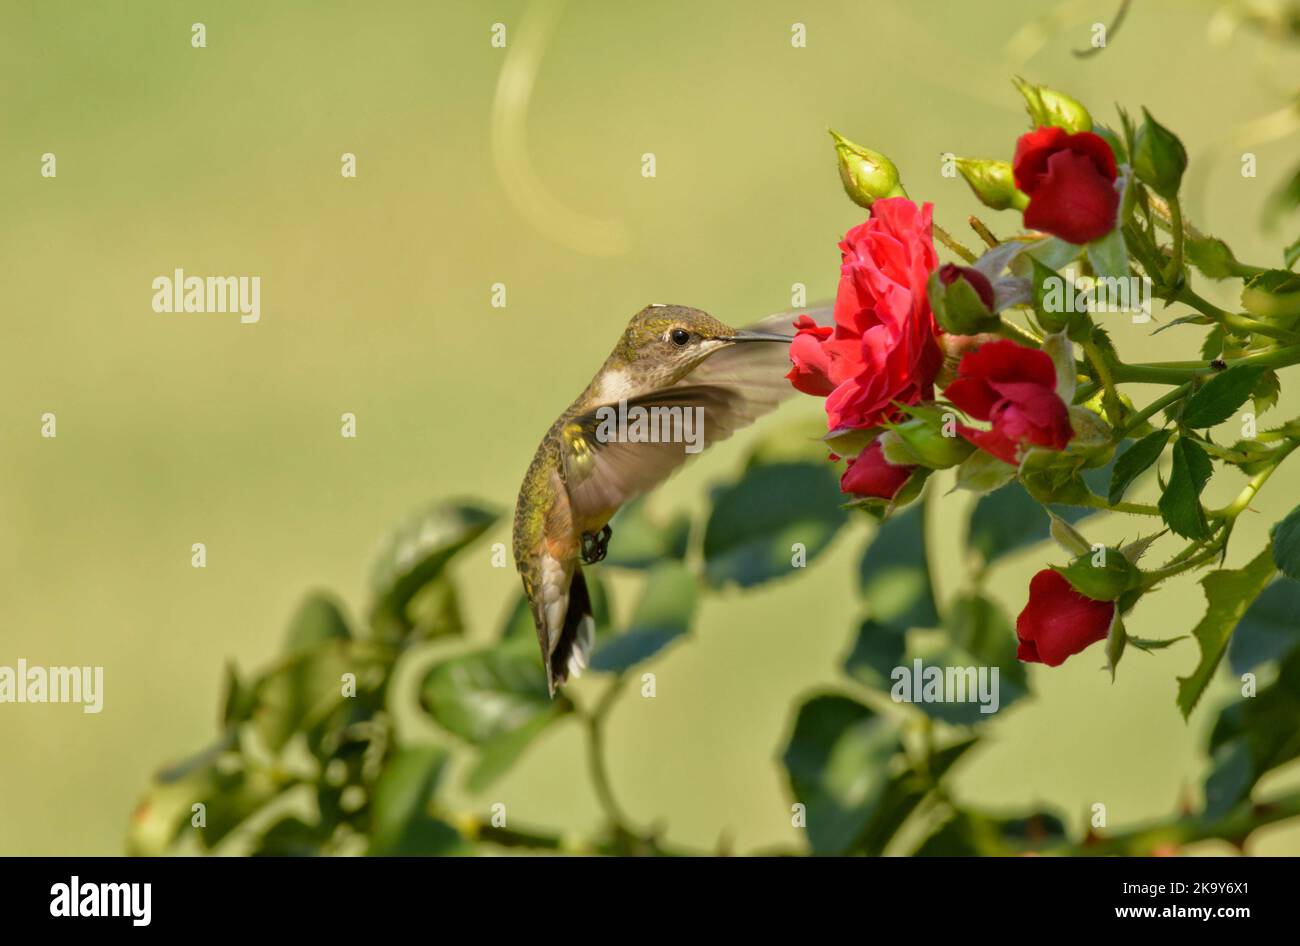 Rubinkehlige Kolibri, die sich im Sommergarten an einer roten Rose ernährt Stockfoto